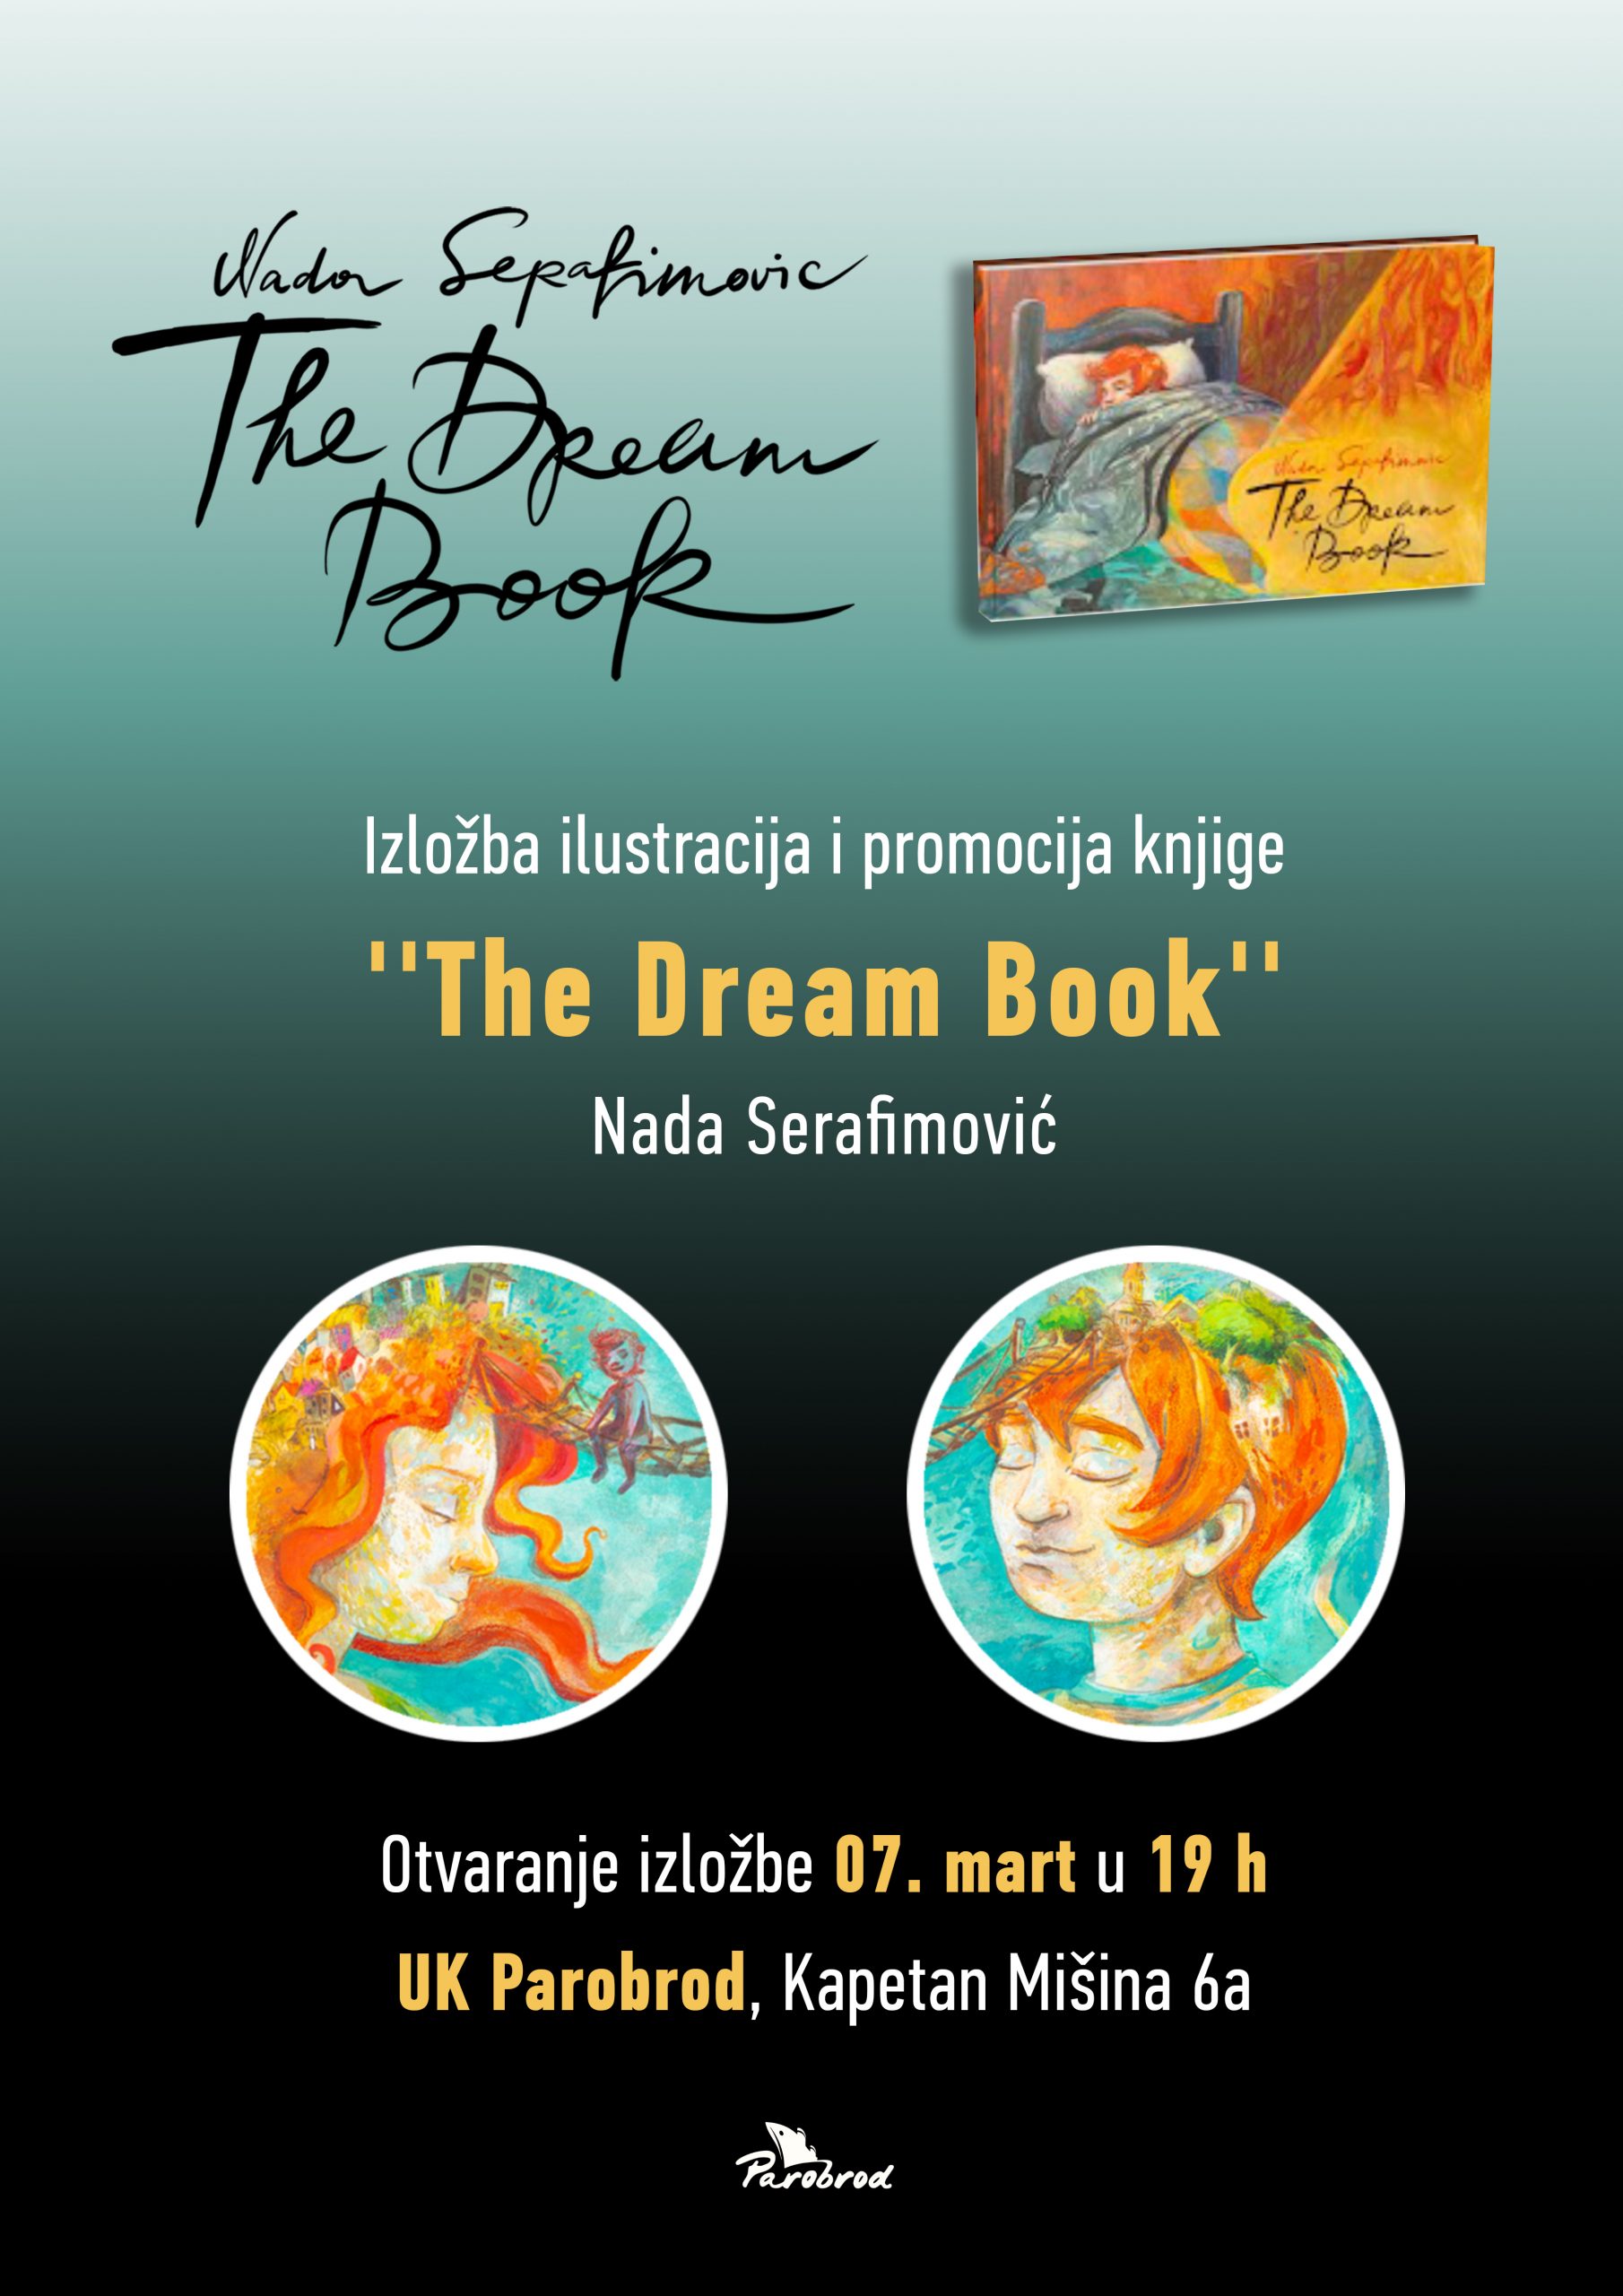 Изложба илустрација и промоција књиге “The Dream Book”